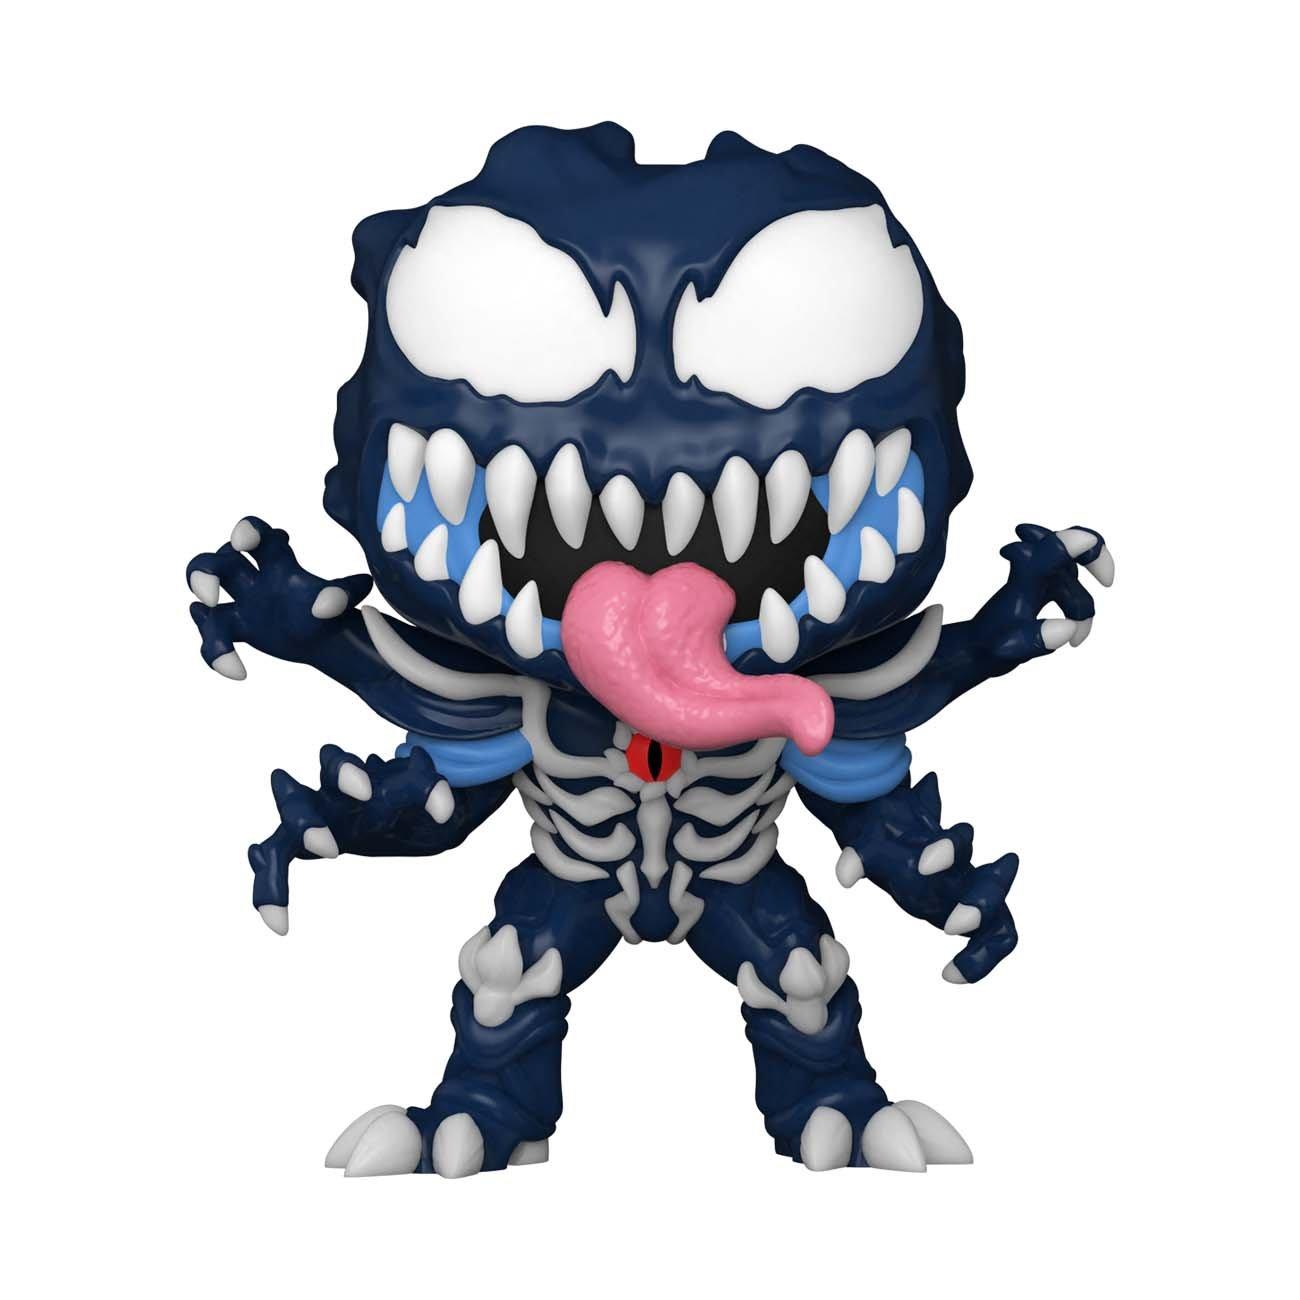 Funko POP! Marvel: Mech Strike Monster Hunters Venom Vinyl Bobblehead